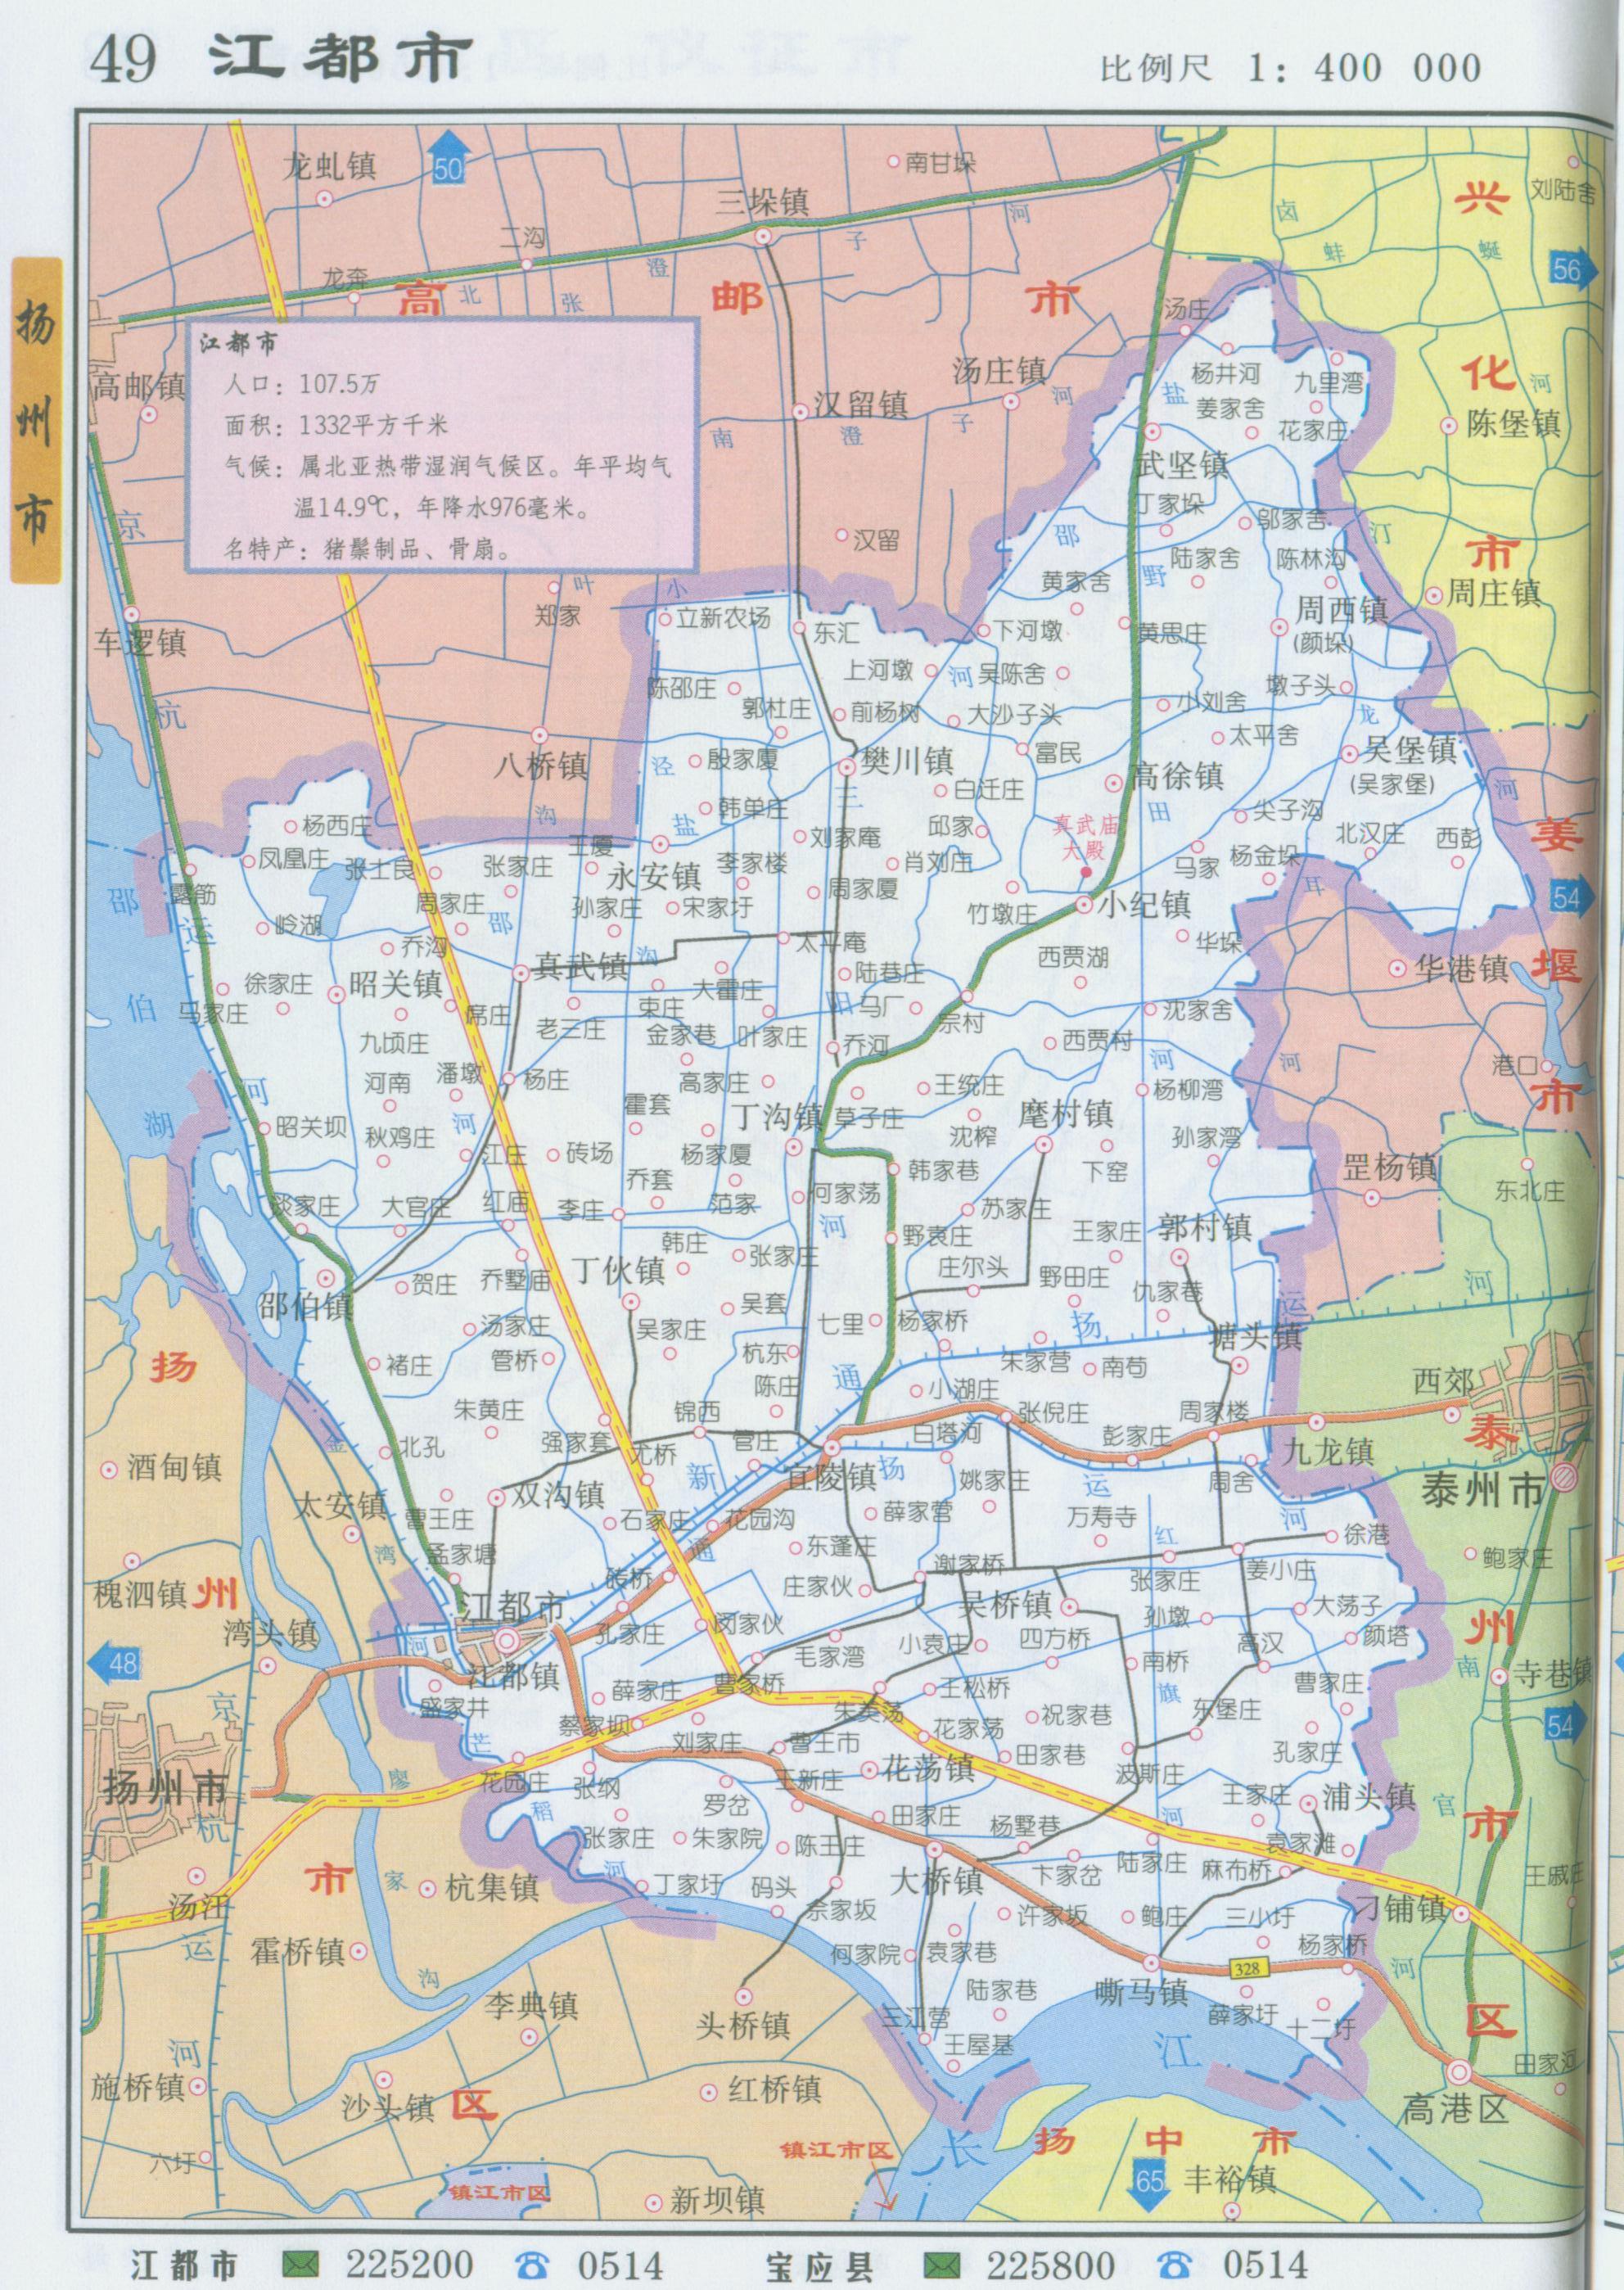 扬州沙头镇地图图片